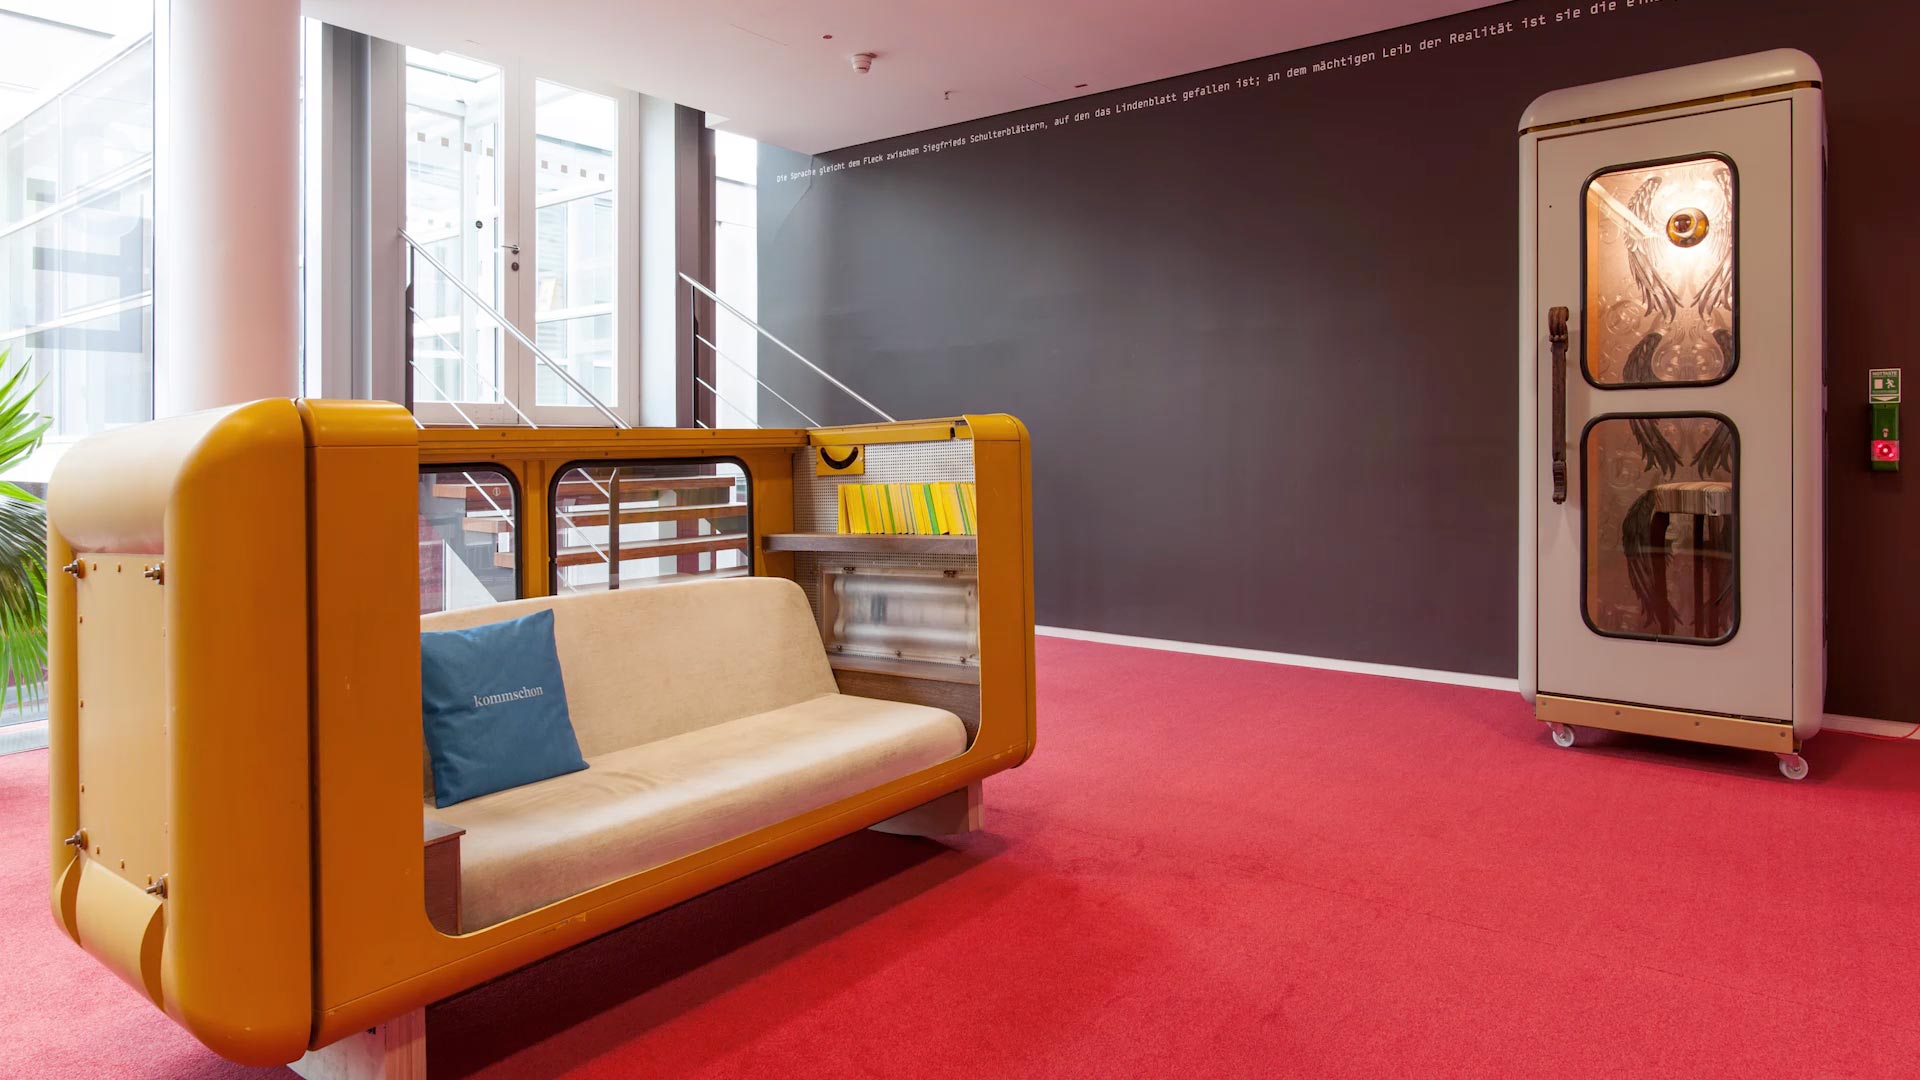 Orange Council – Zu Möbeln umgebaute Telefonzellen. Rauminstallation des Künstlerkollektivs Freeters für die Telekom